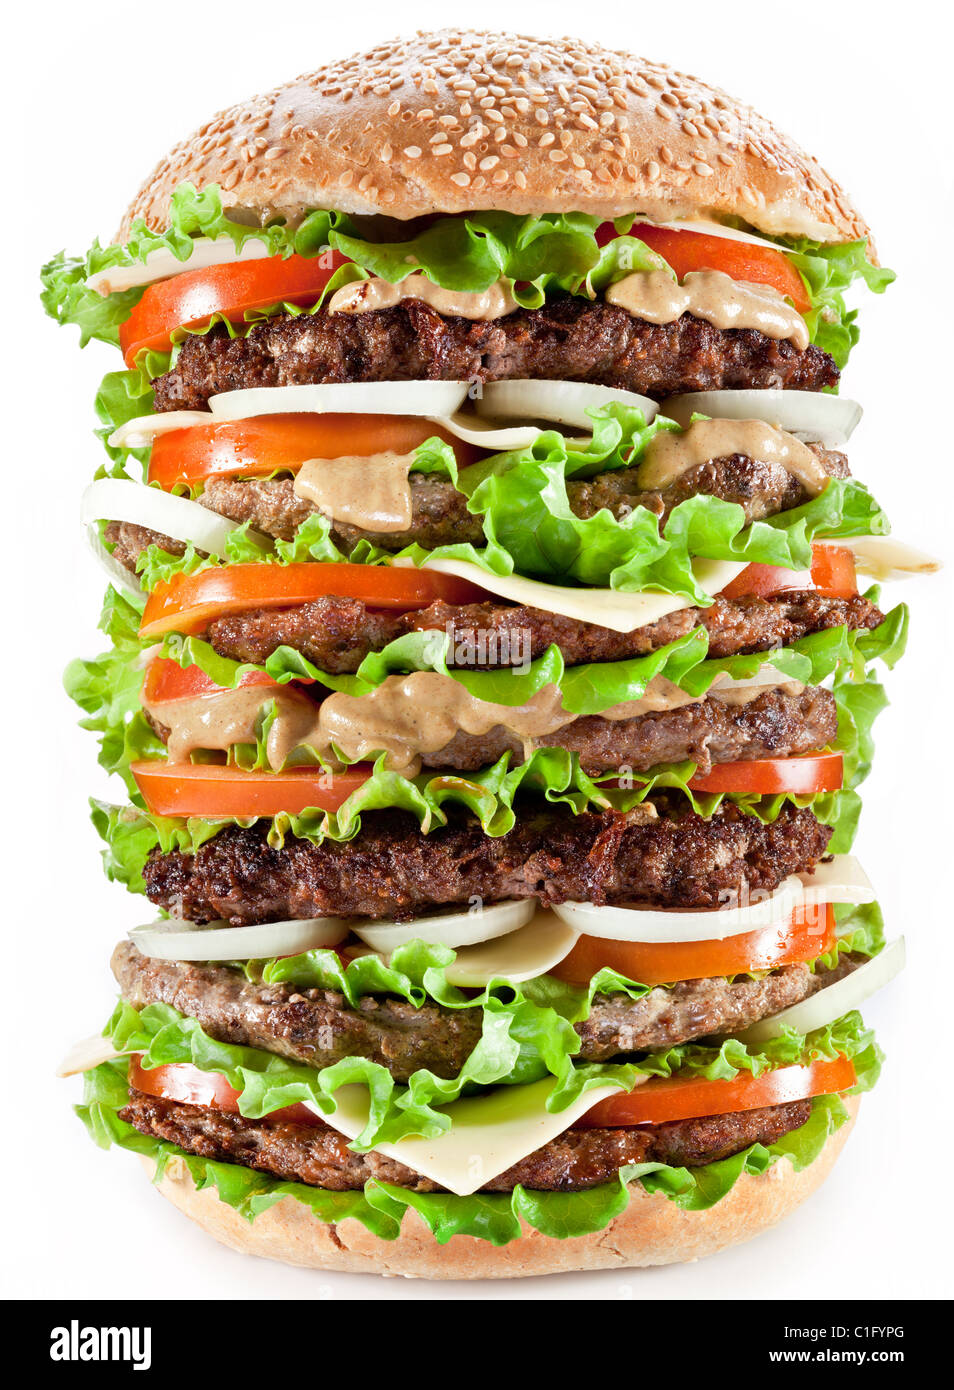 Gigantic hamburger on white background. Stock Photo